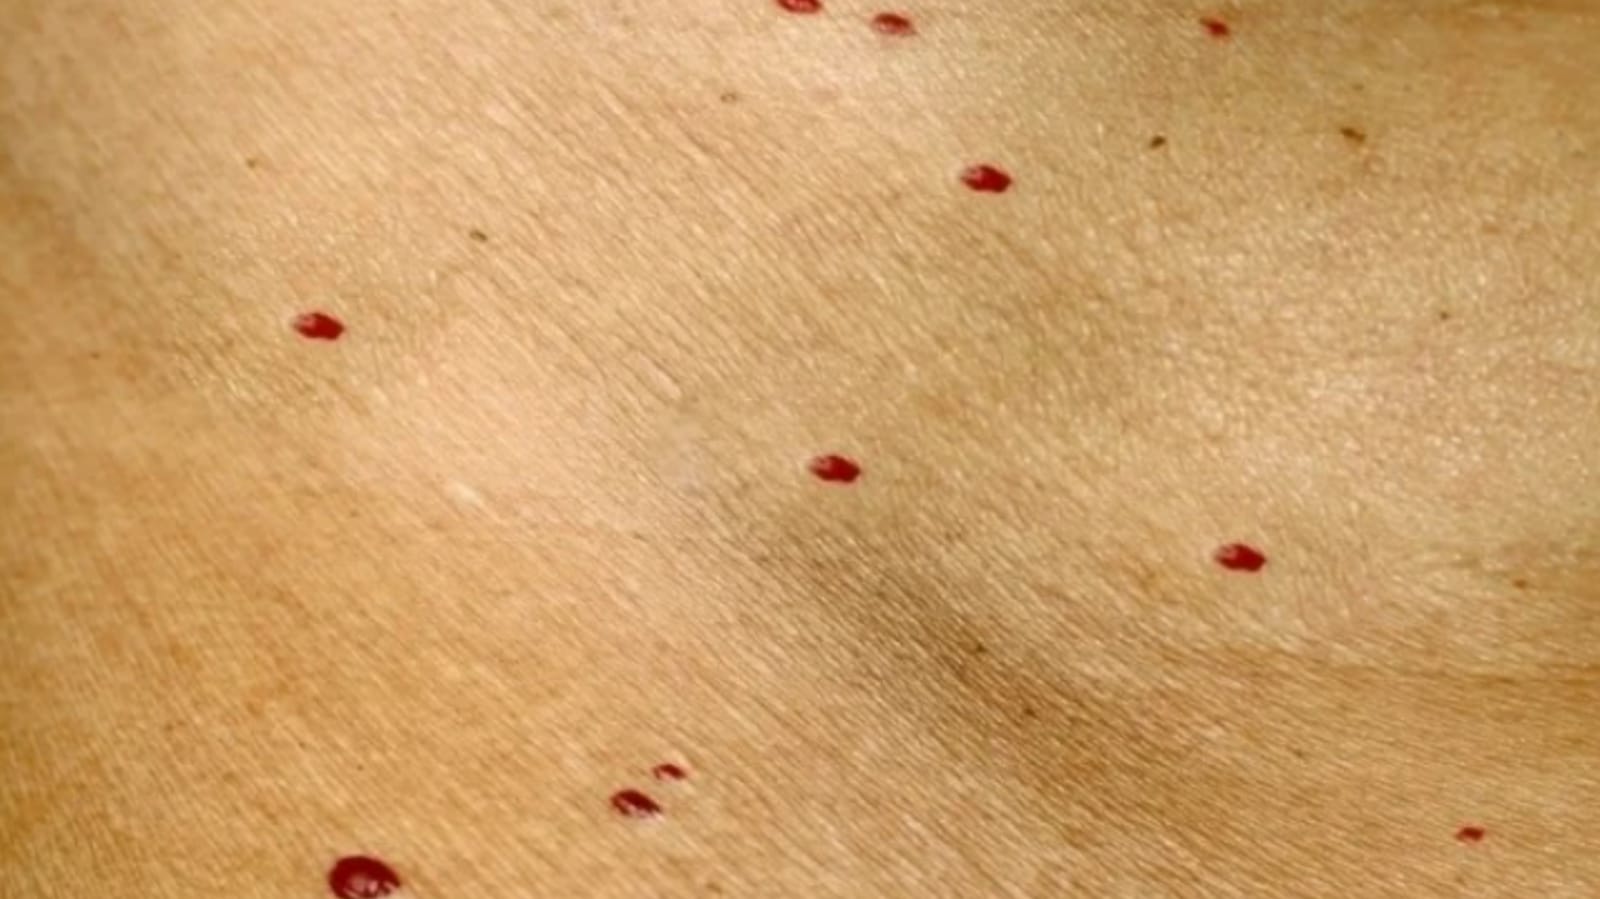 puntos rojos en la piel